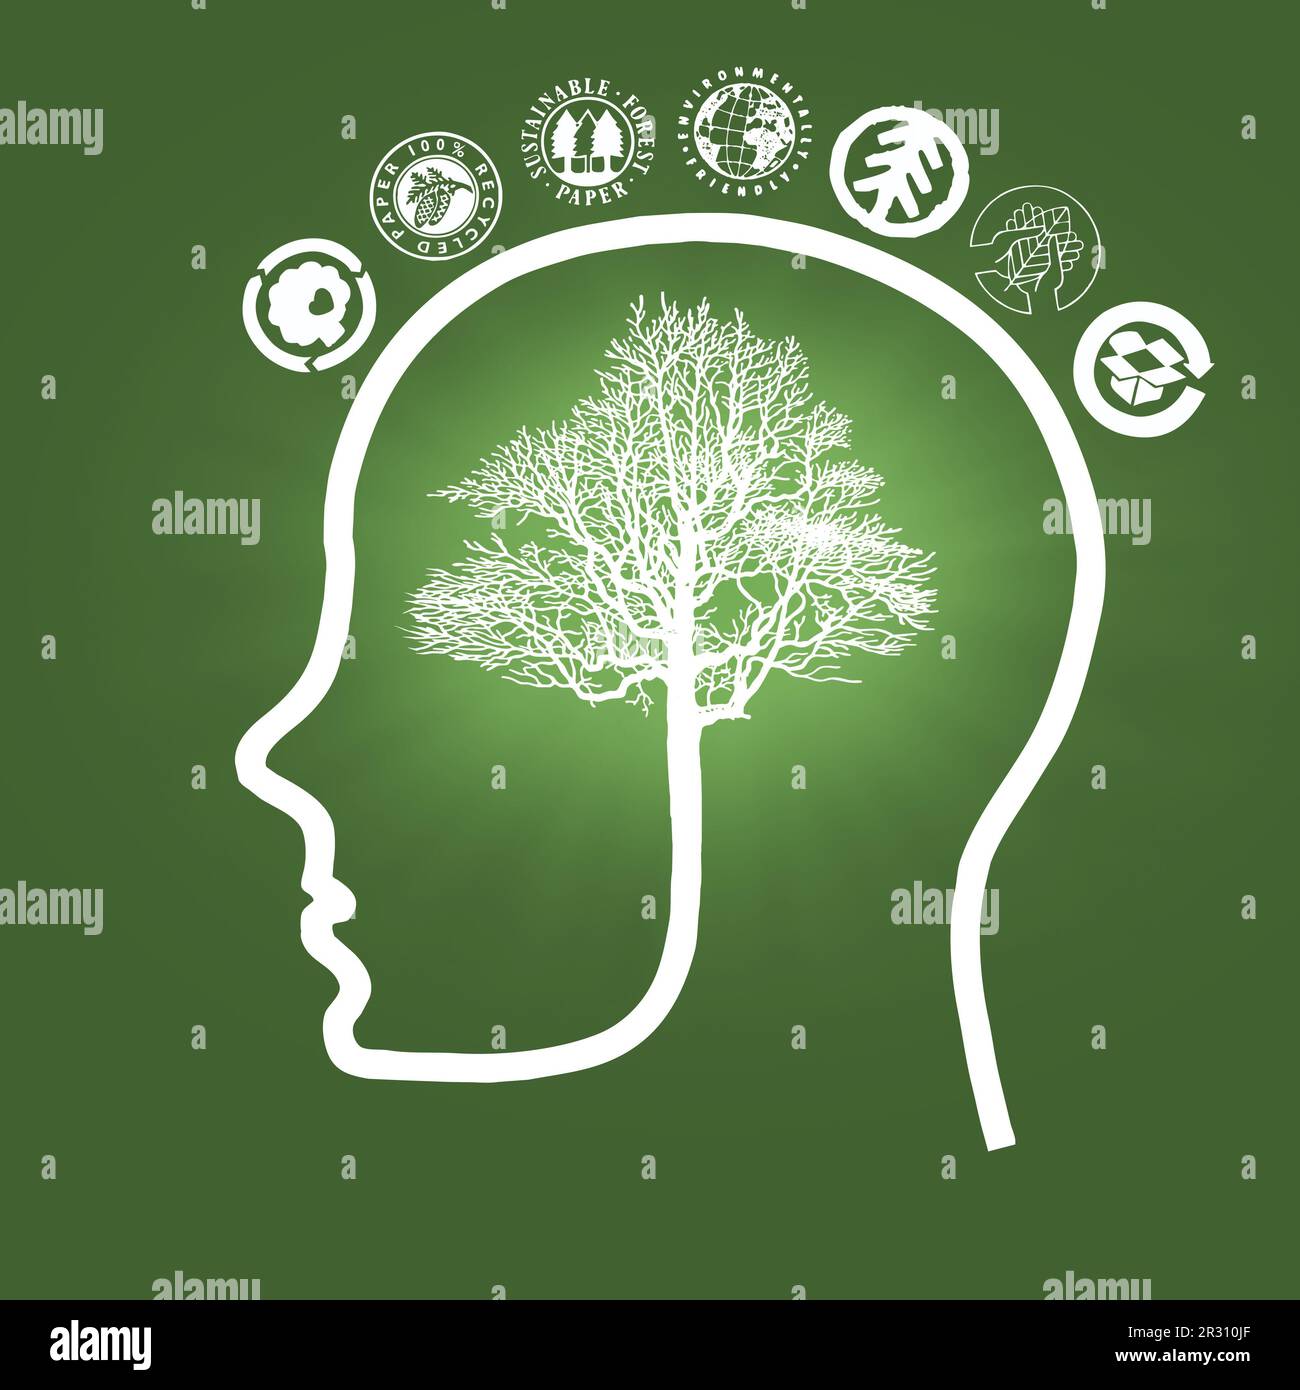 Illustration du contour de la tête humaine avec un cerveau en forme d'arbre entouré de pictogrammes écologiques - concept de sensibilisation à l'environnement Banque D'Images